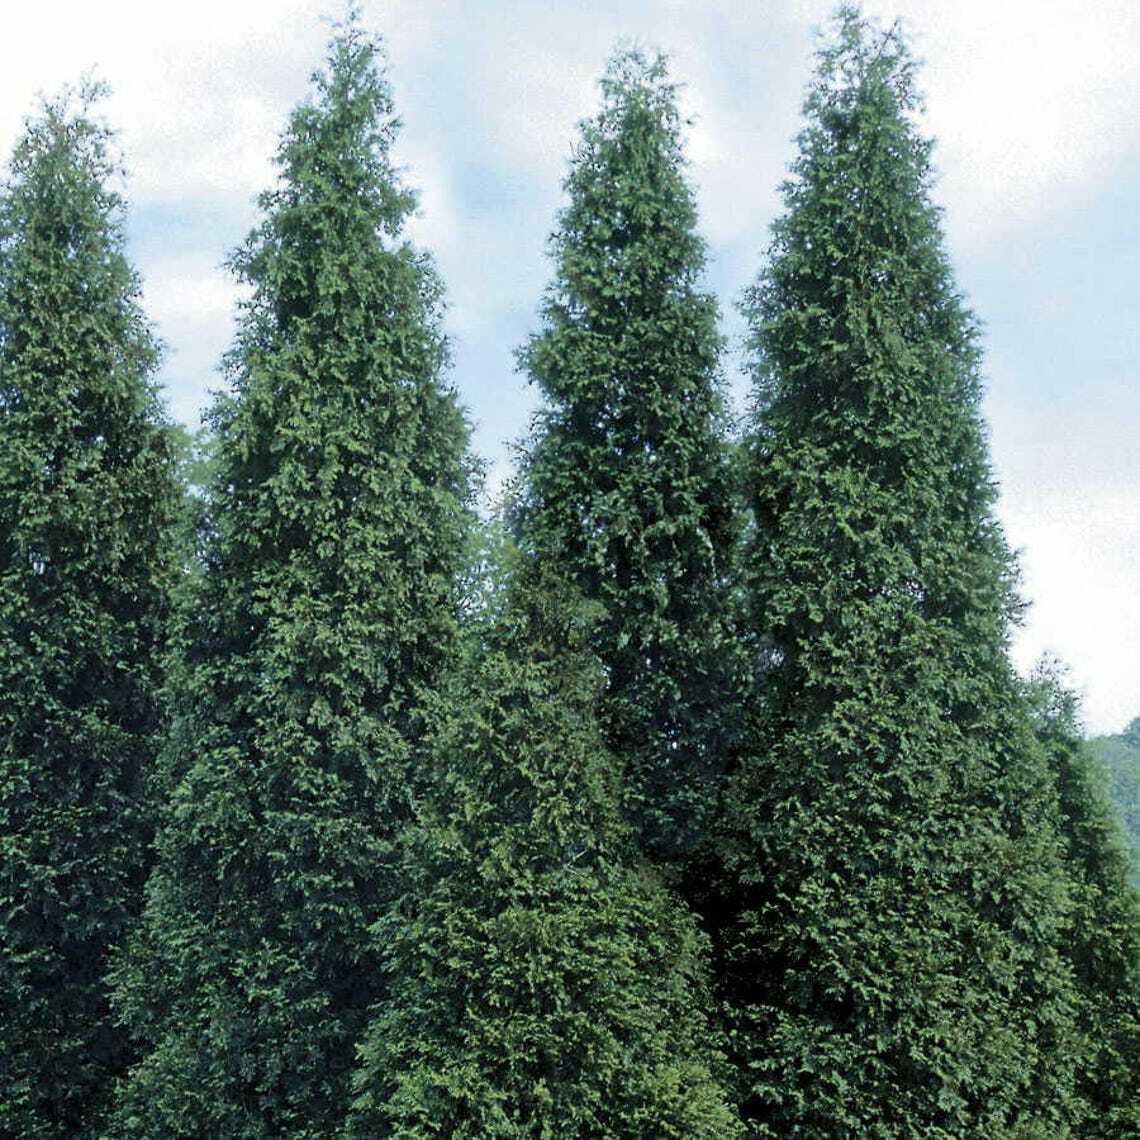 100 Thuja Green Giant Arborvitae Trees/Shrubs - 12-16" Tall Seedlings - Live Plants - 3" Pots - The Nursery Center